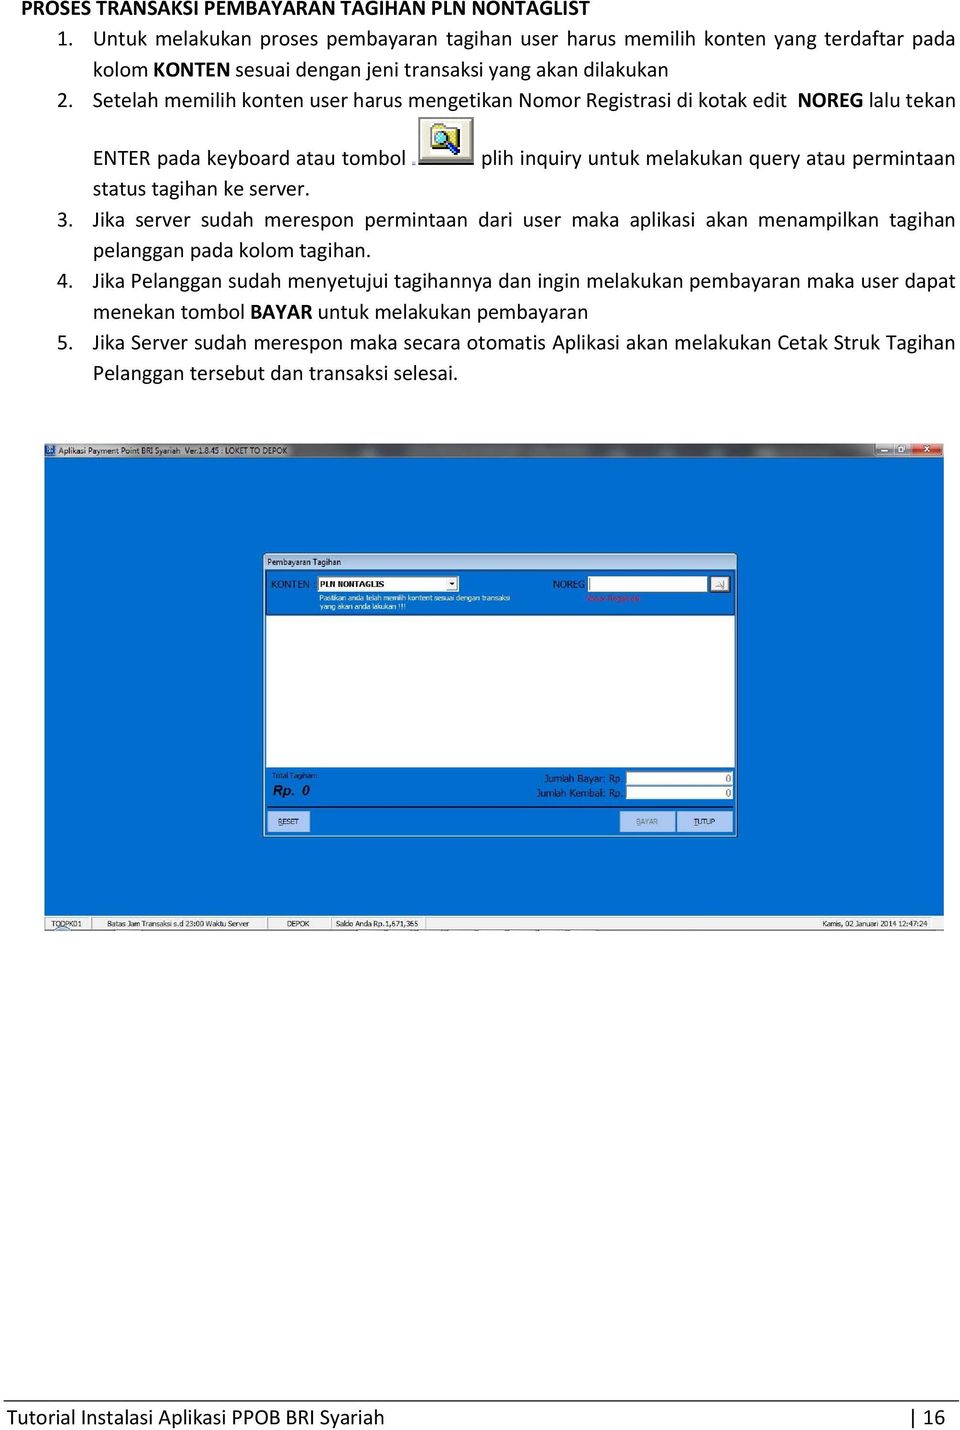 Setelah memilih konten user harus mengetikan Nomor Registrasi di kotak edit NOREG lalu tekan ENTER pada keyboard atau tombol plih inquiry untuk melakukan query atau permintaan status tagihan ke